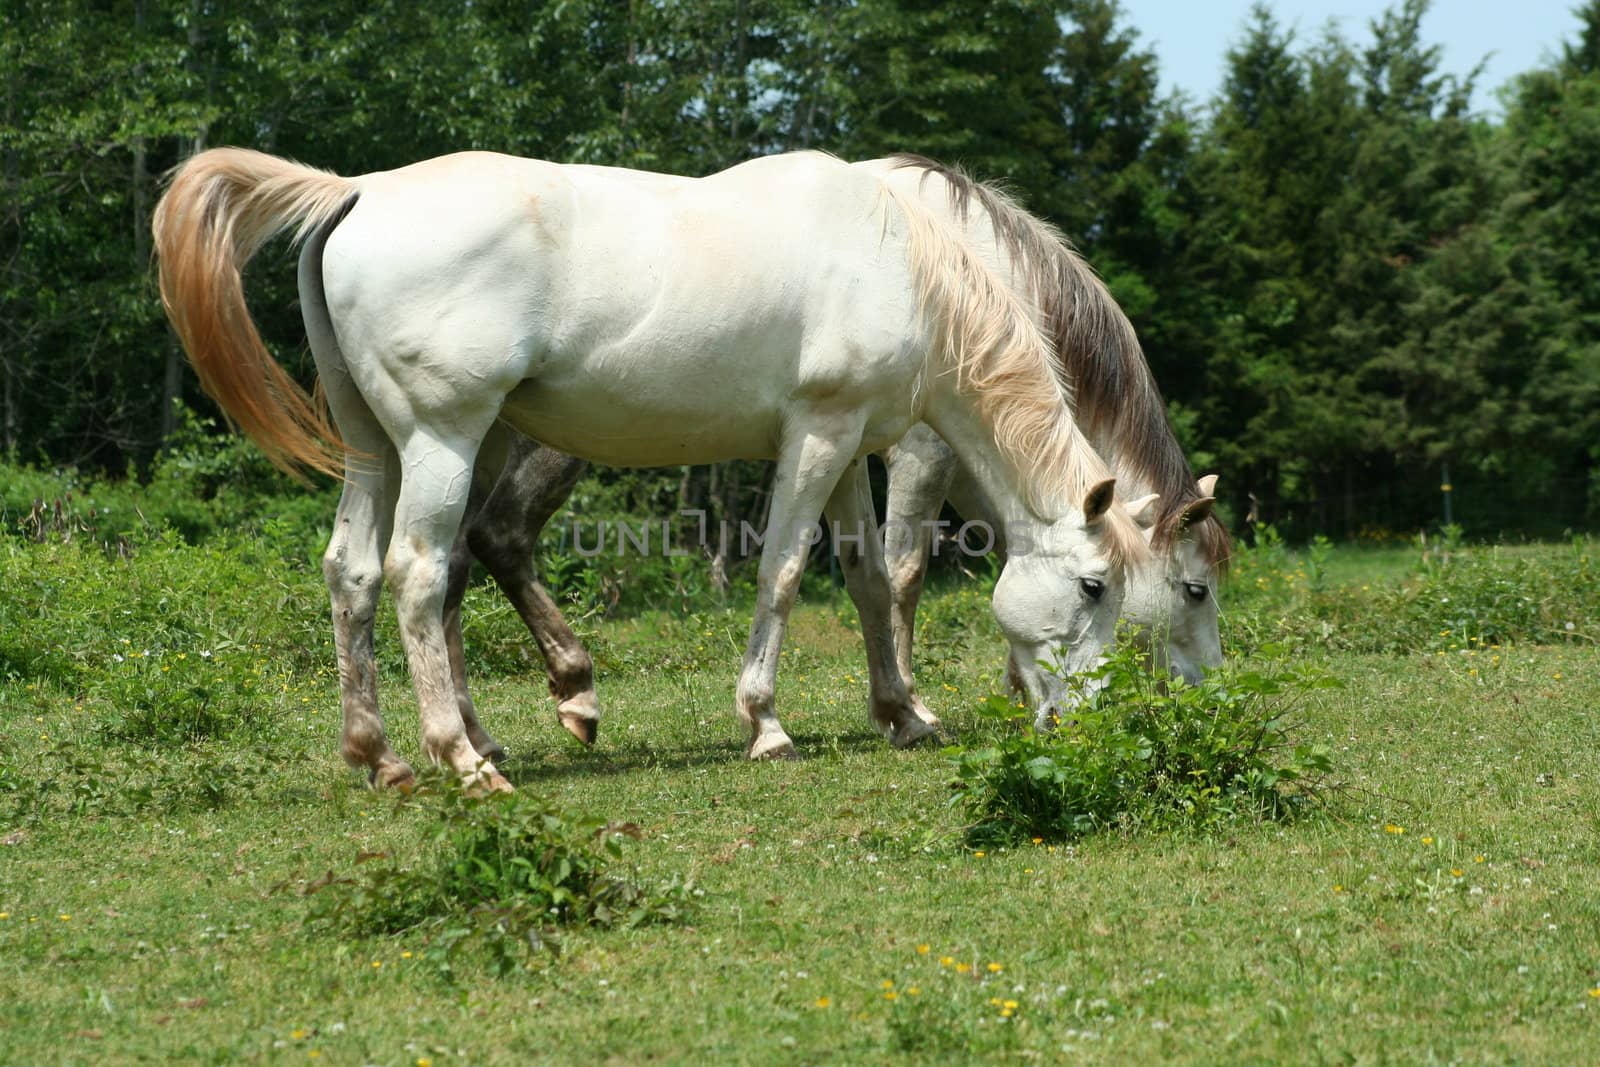 White Horse by njnightsky